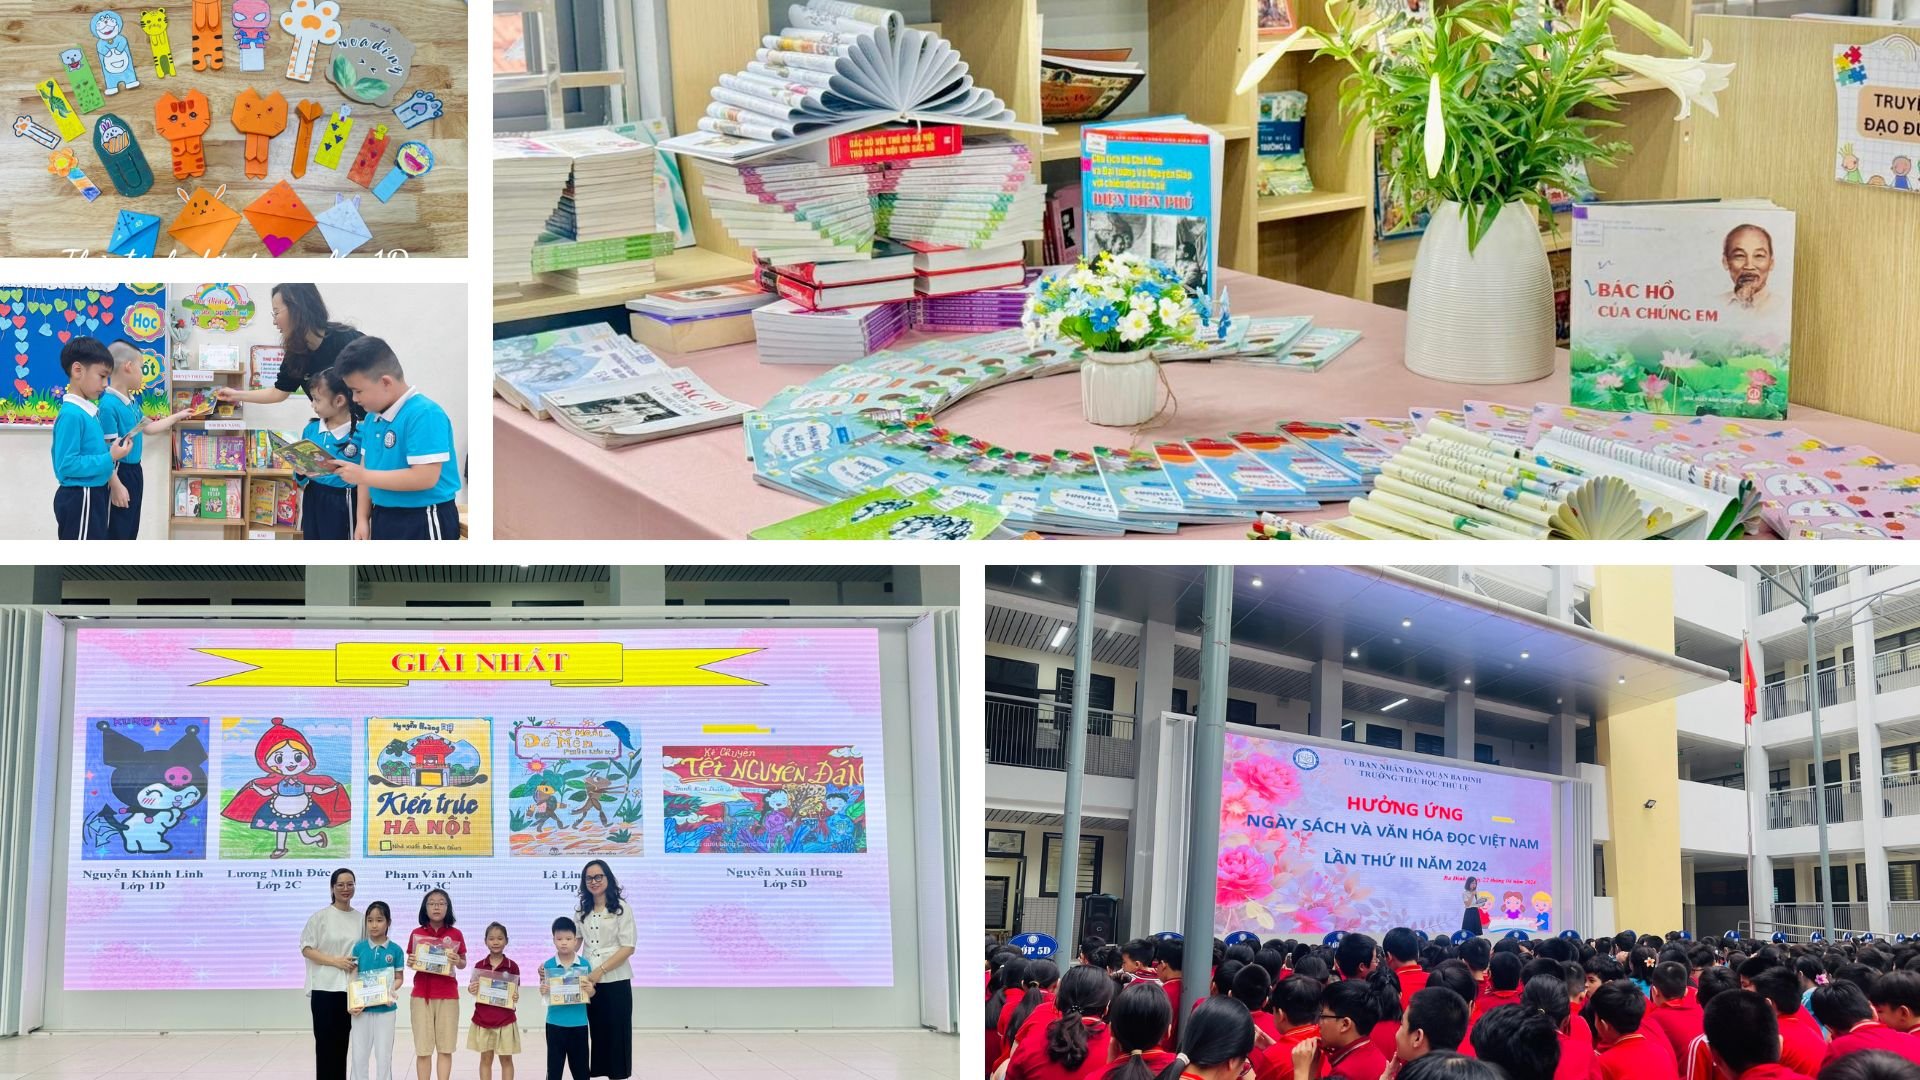 Trường Tiểu học Thủ Lệ hưởng ứng Ngày Sách và Văn hóa đọc Việt Nam lần thứ III năm 2024